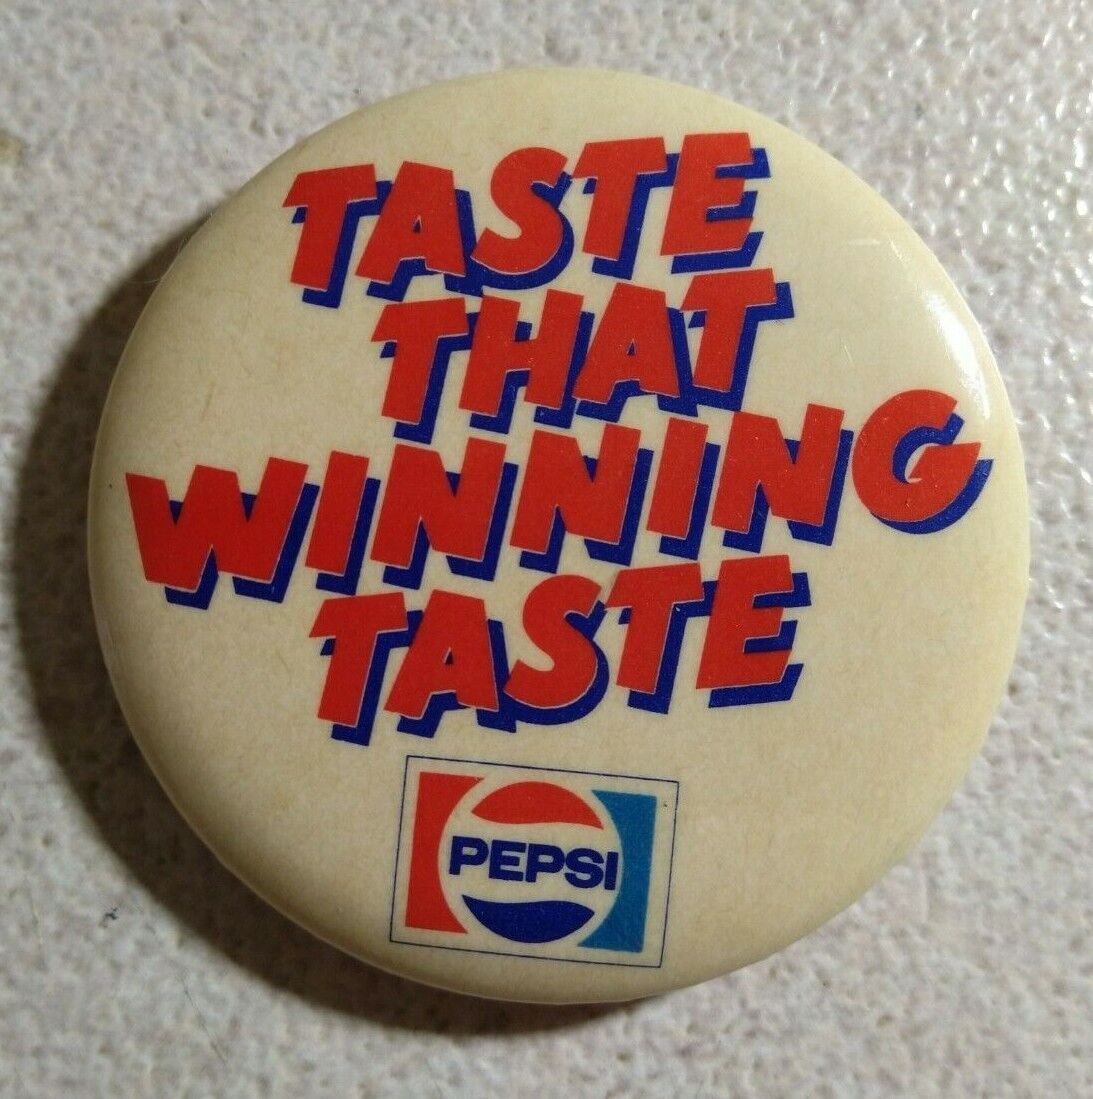 Taste That Winning Taste Pepsi Advertising Pinback Button - Approx. 2.25\